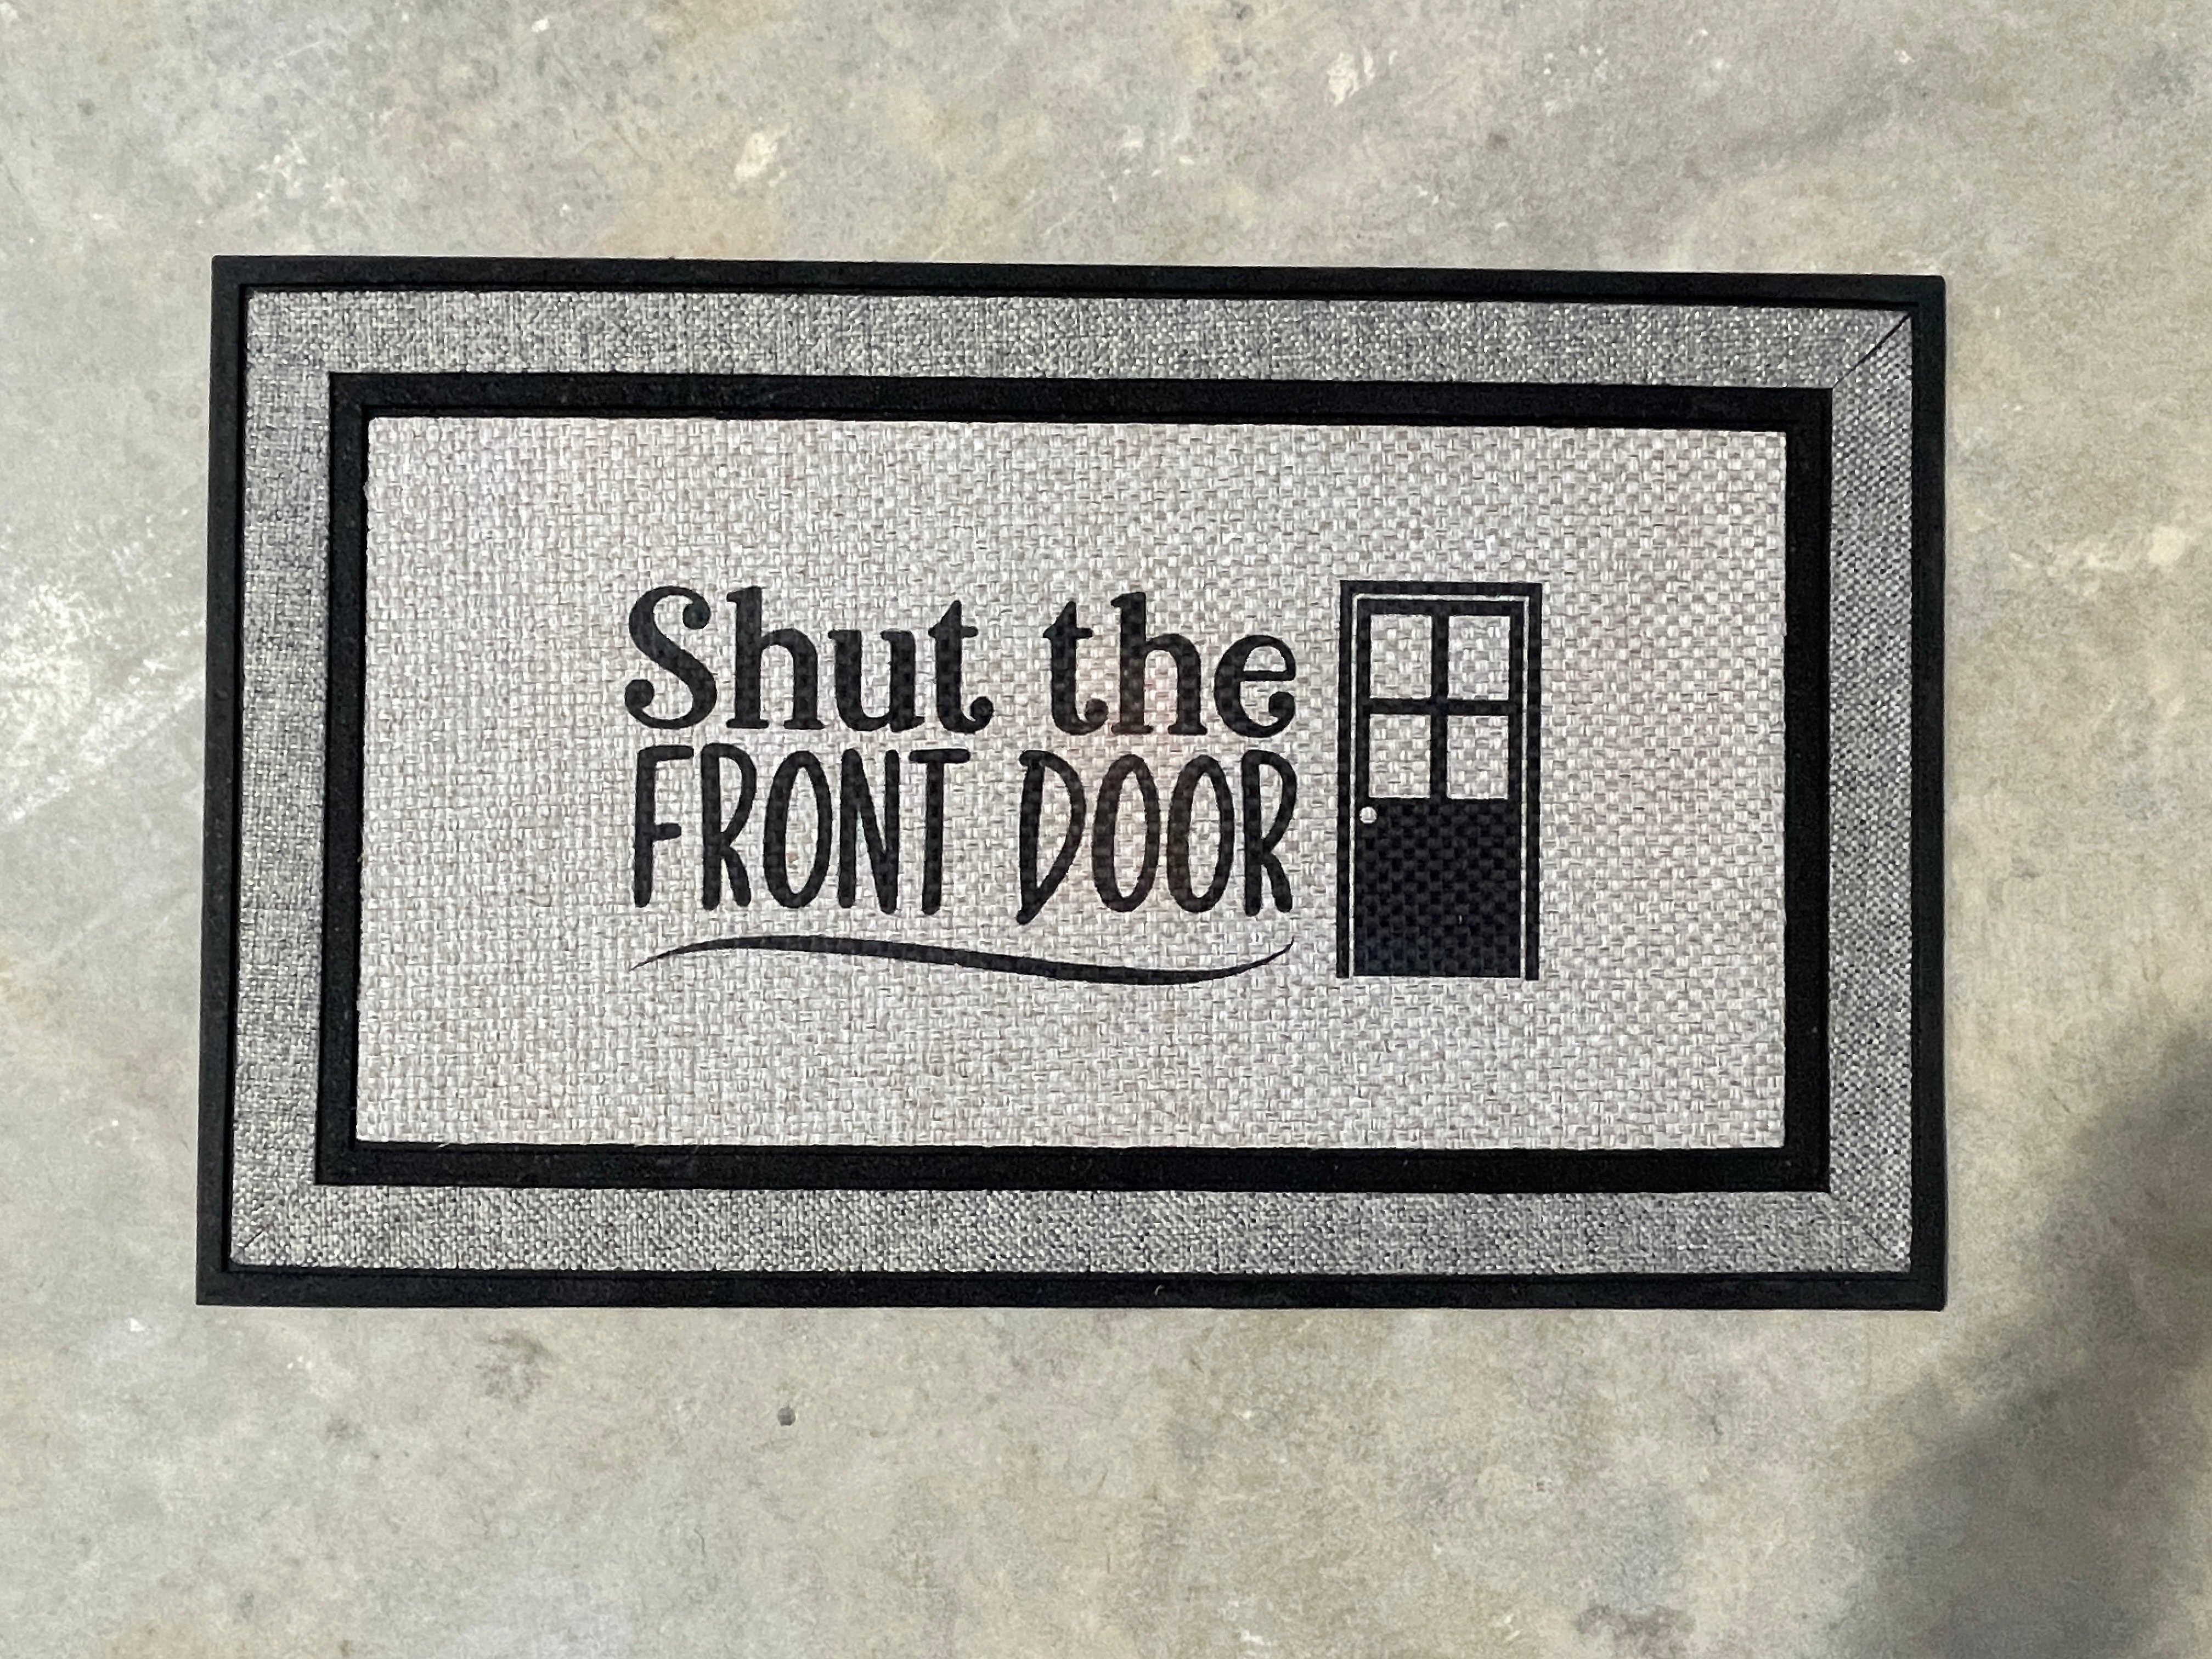 Shut The Front Door Doormat